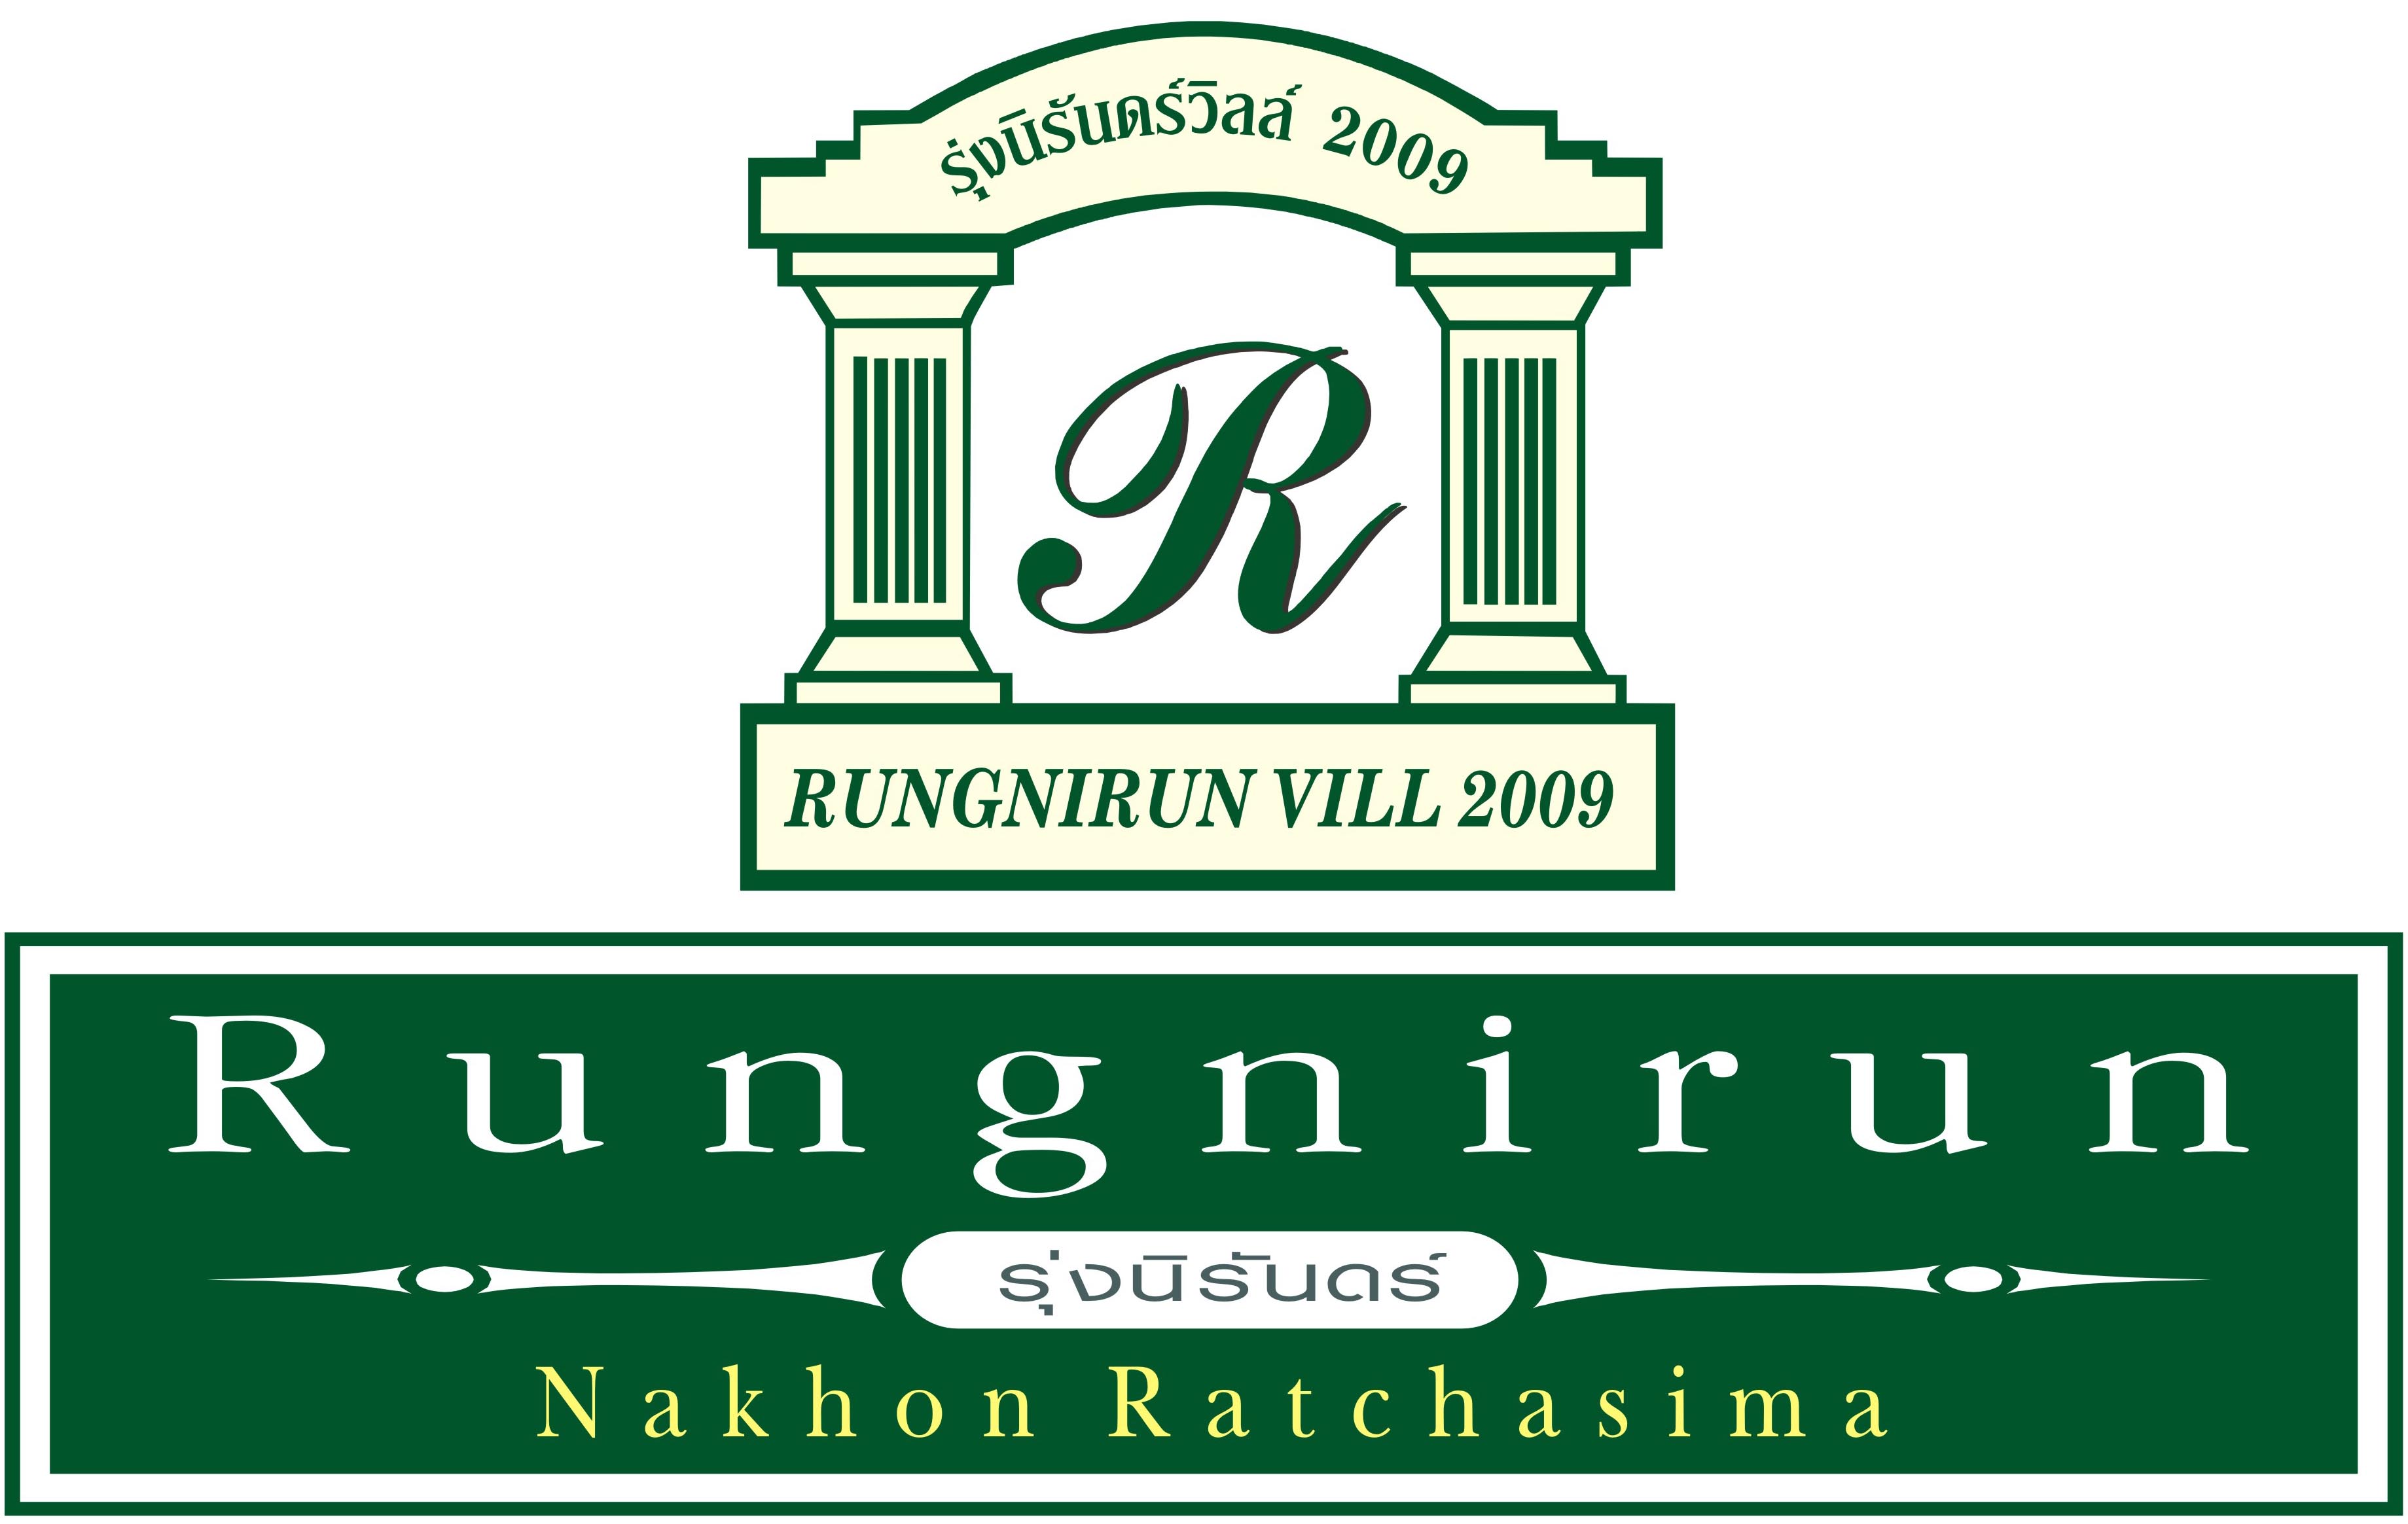 Rungnirun Vill 2009 Co., Ltd.